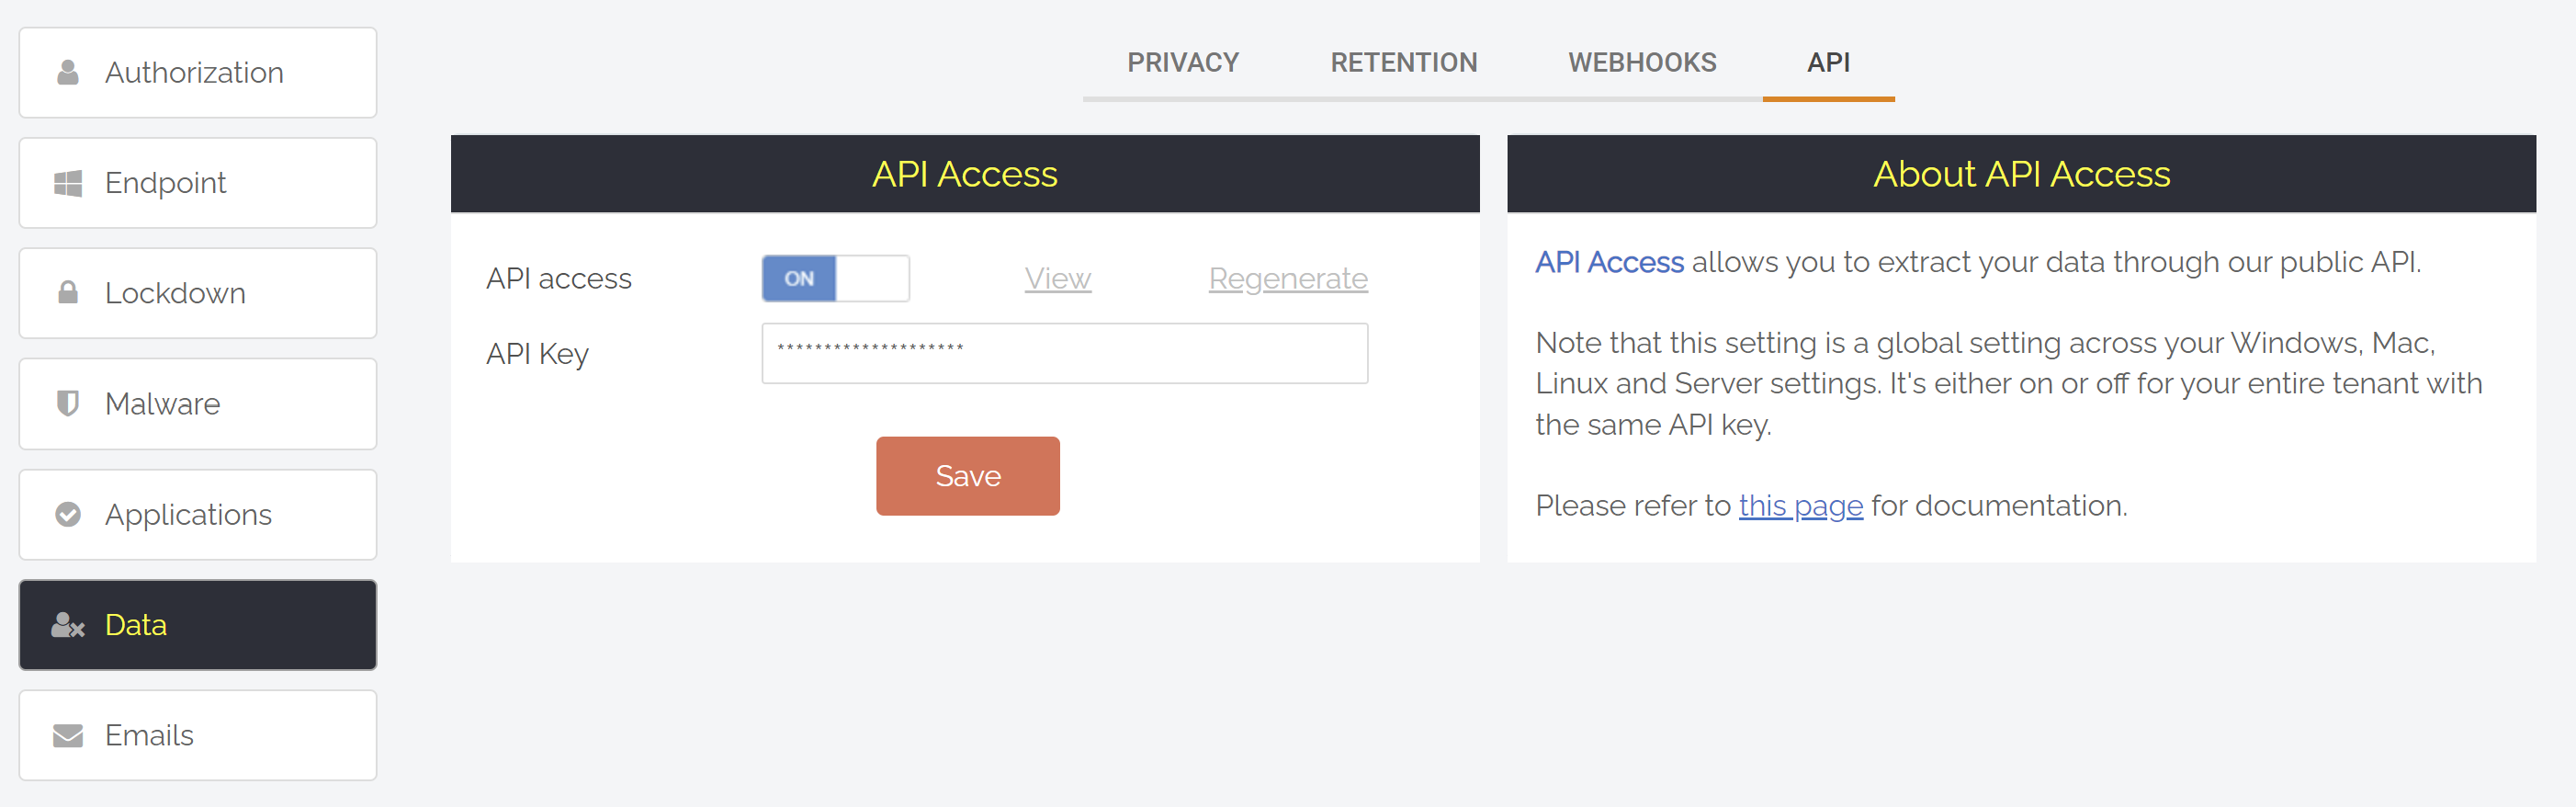 Rest API portal settings